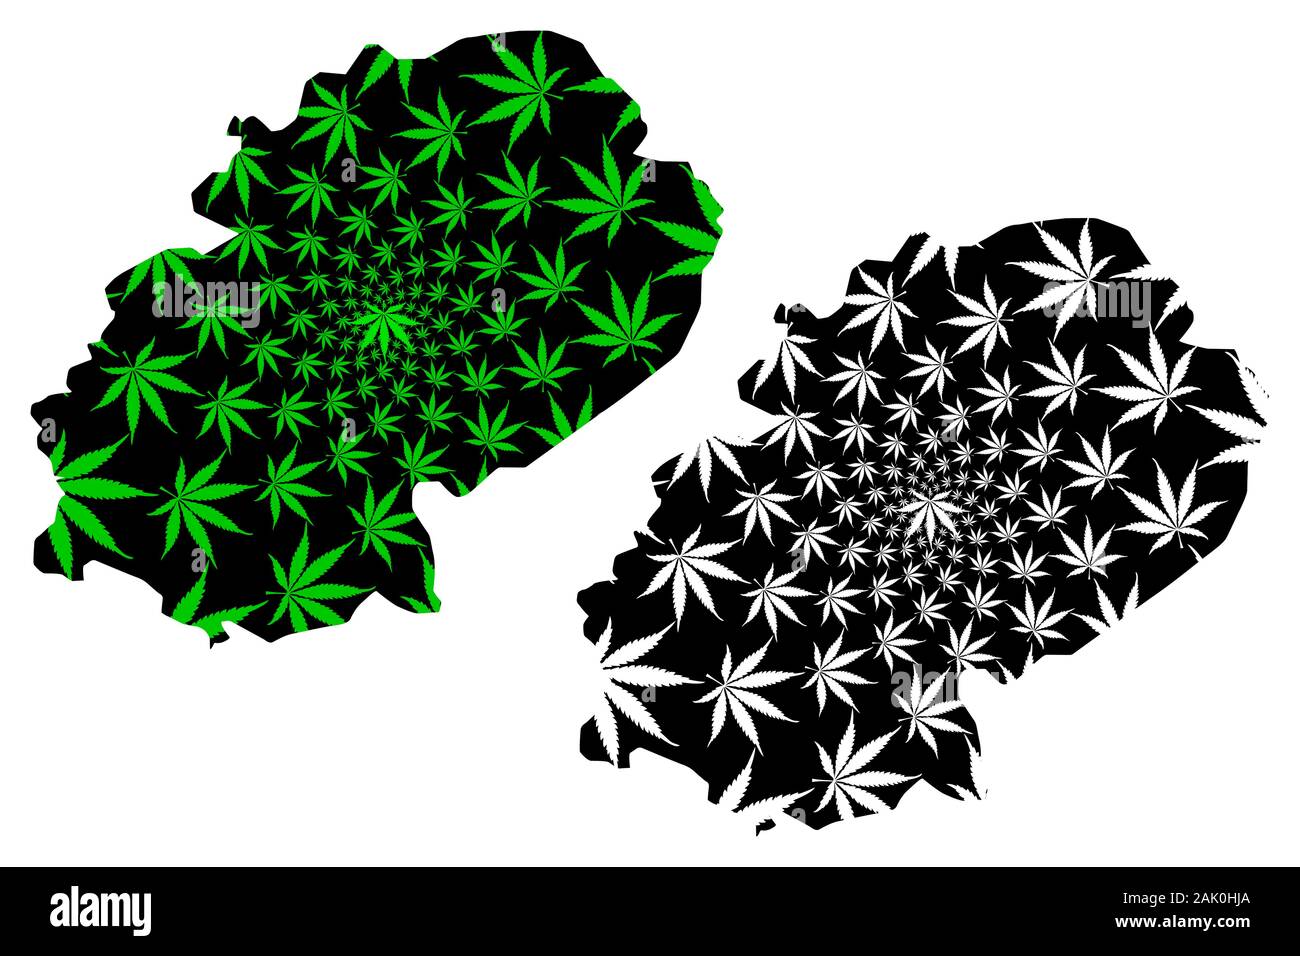 Dhale Governatorats (Gouvernements von Jemen, Republik Jemen) Karte  cannabis Blatt grün und schwarz ausgelegt, Ad dali Karte aus Marihuana  (Marihuana, T Stock-Vektorgrafik - Alamy